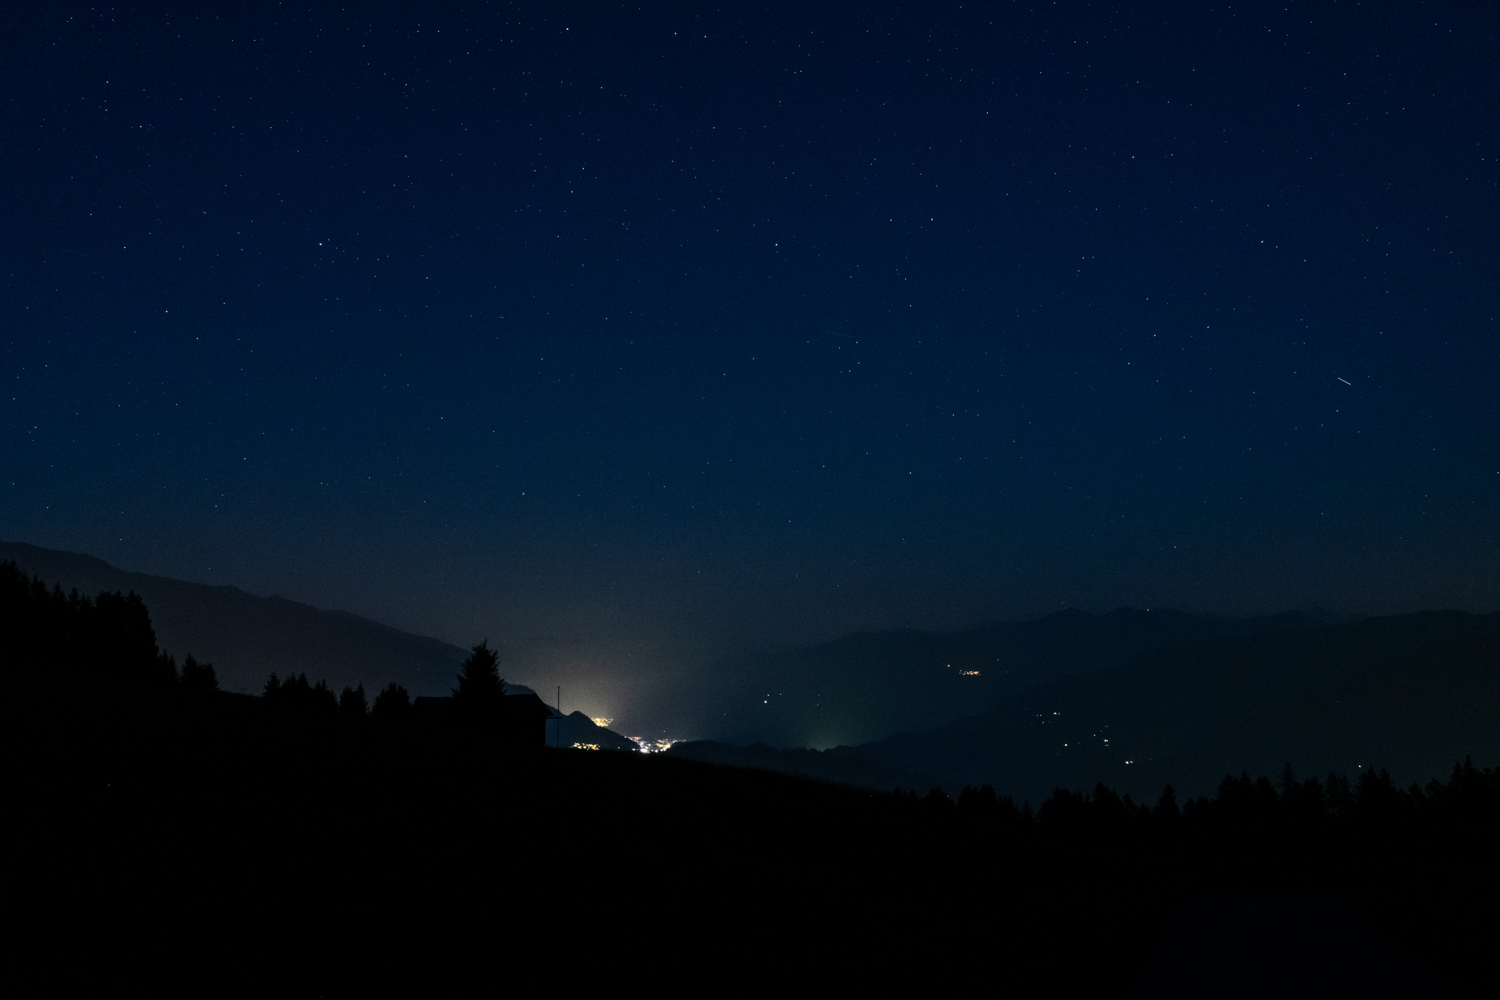 Fotografie des Nachthimmels in den Bergen. Aufnahmeort Falera in den Schweizer Alpen. Gut sichtbar ist die Lichtverschmutzung im Nachbardorf.